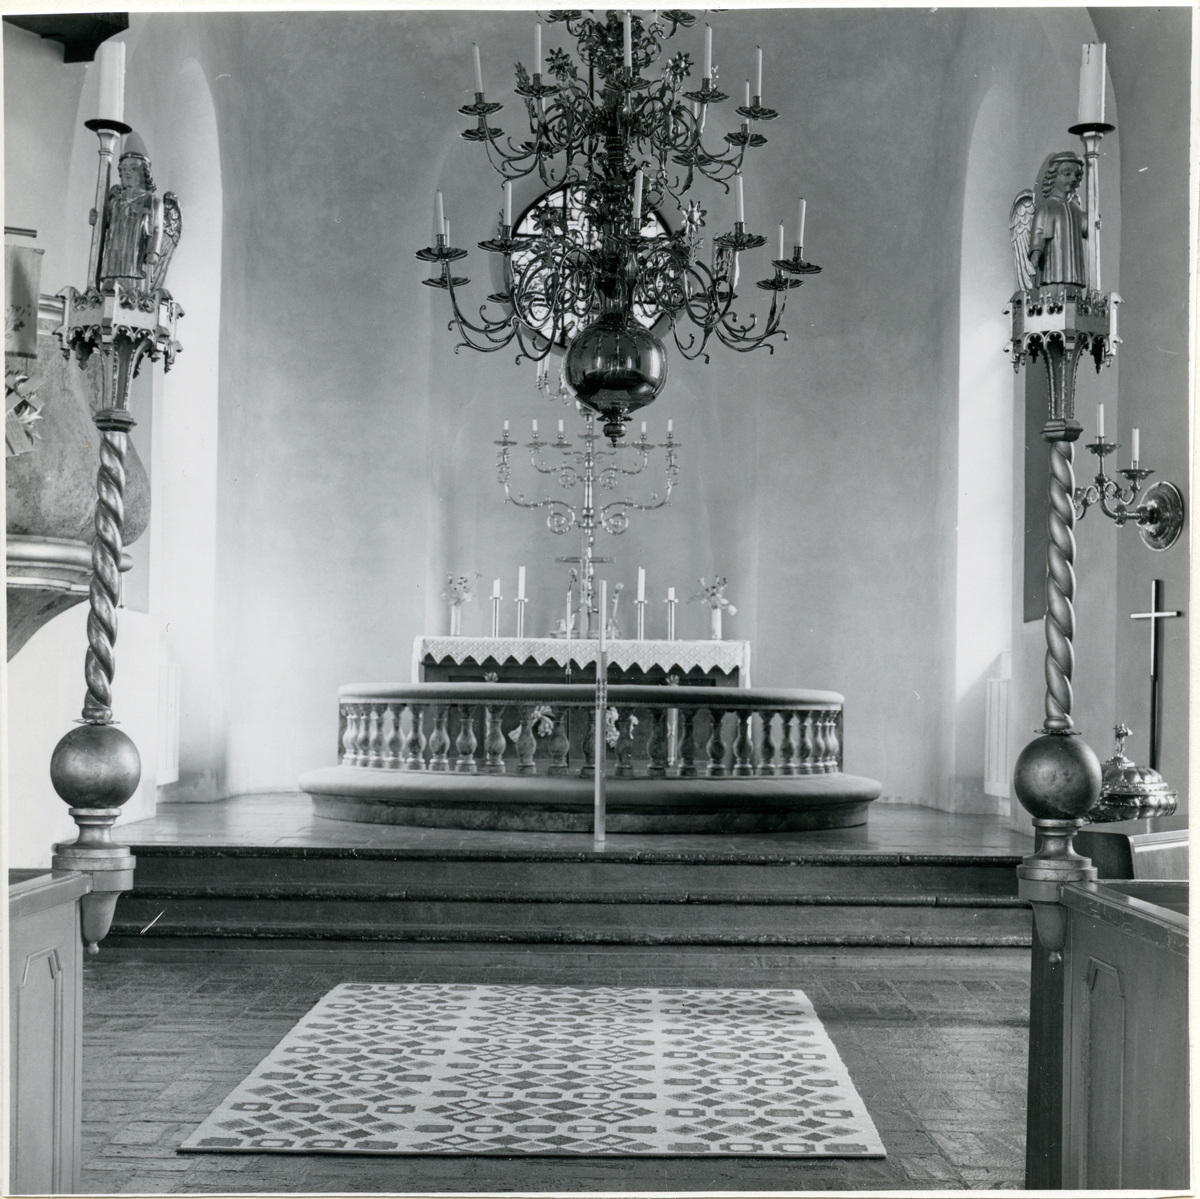 Skultuna sn, Västerås.
Interiör av Skultuna kyrka, mot altaret. 1980.